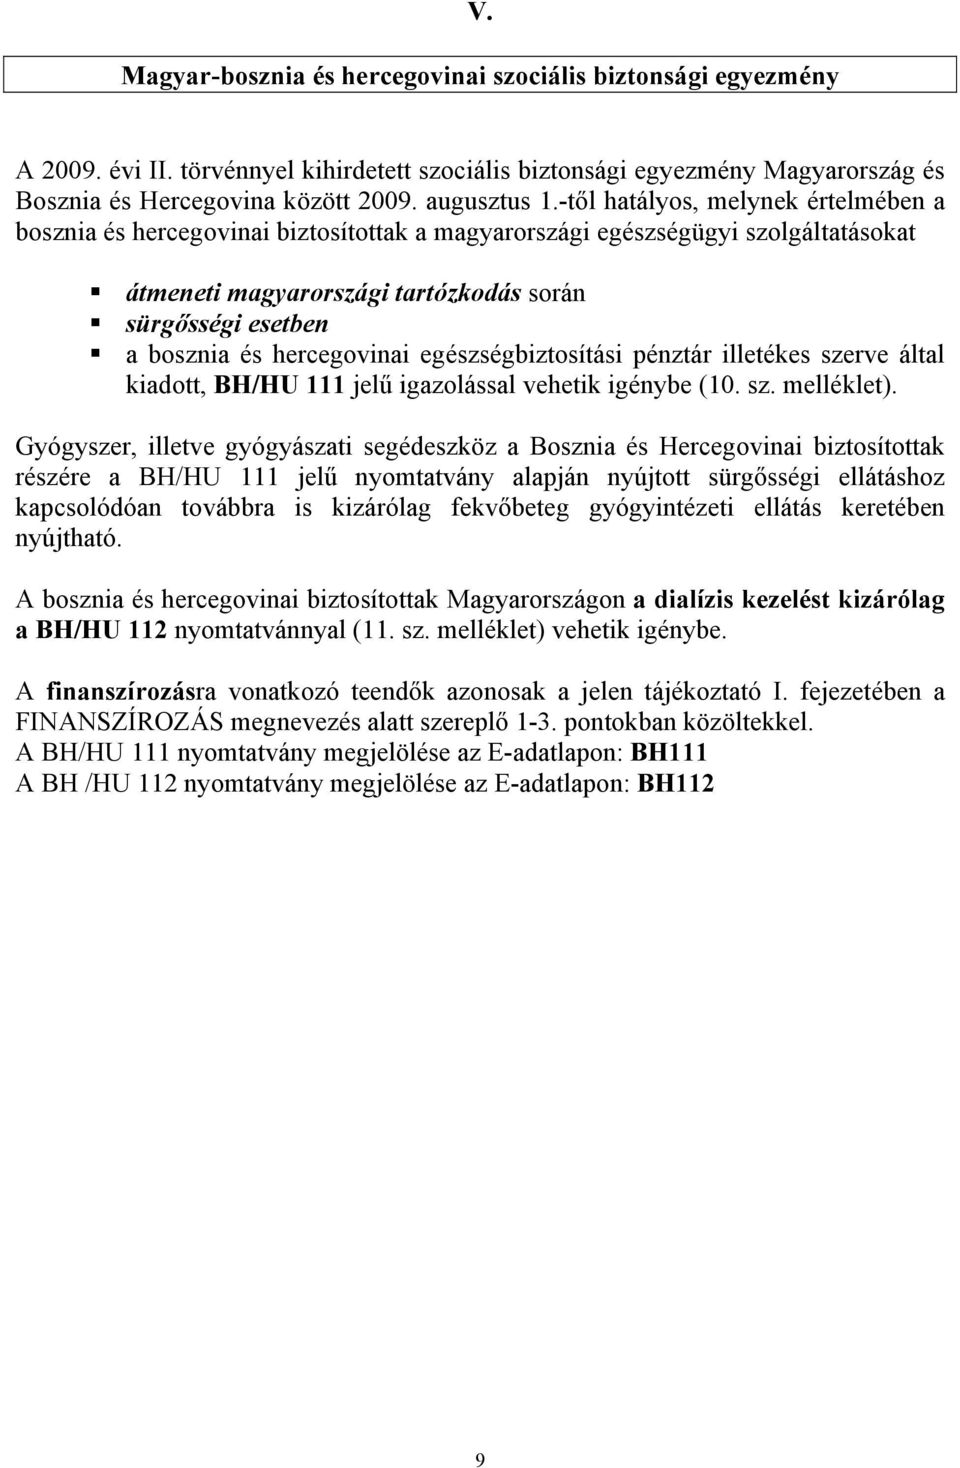 hercegovinai egészségbiztosítási pénztár illetékes szerve által kiadott, BH/HU 111 jelű igazolással vehetik igénybe (10. sz. melléklet).